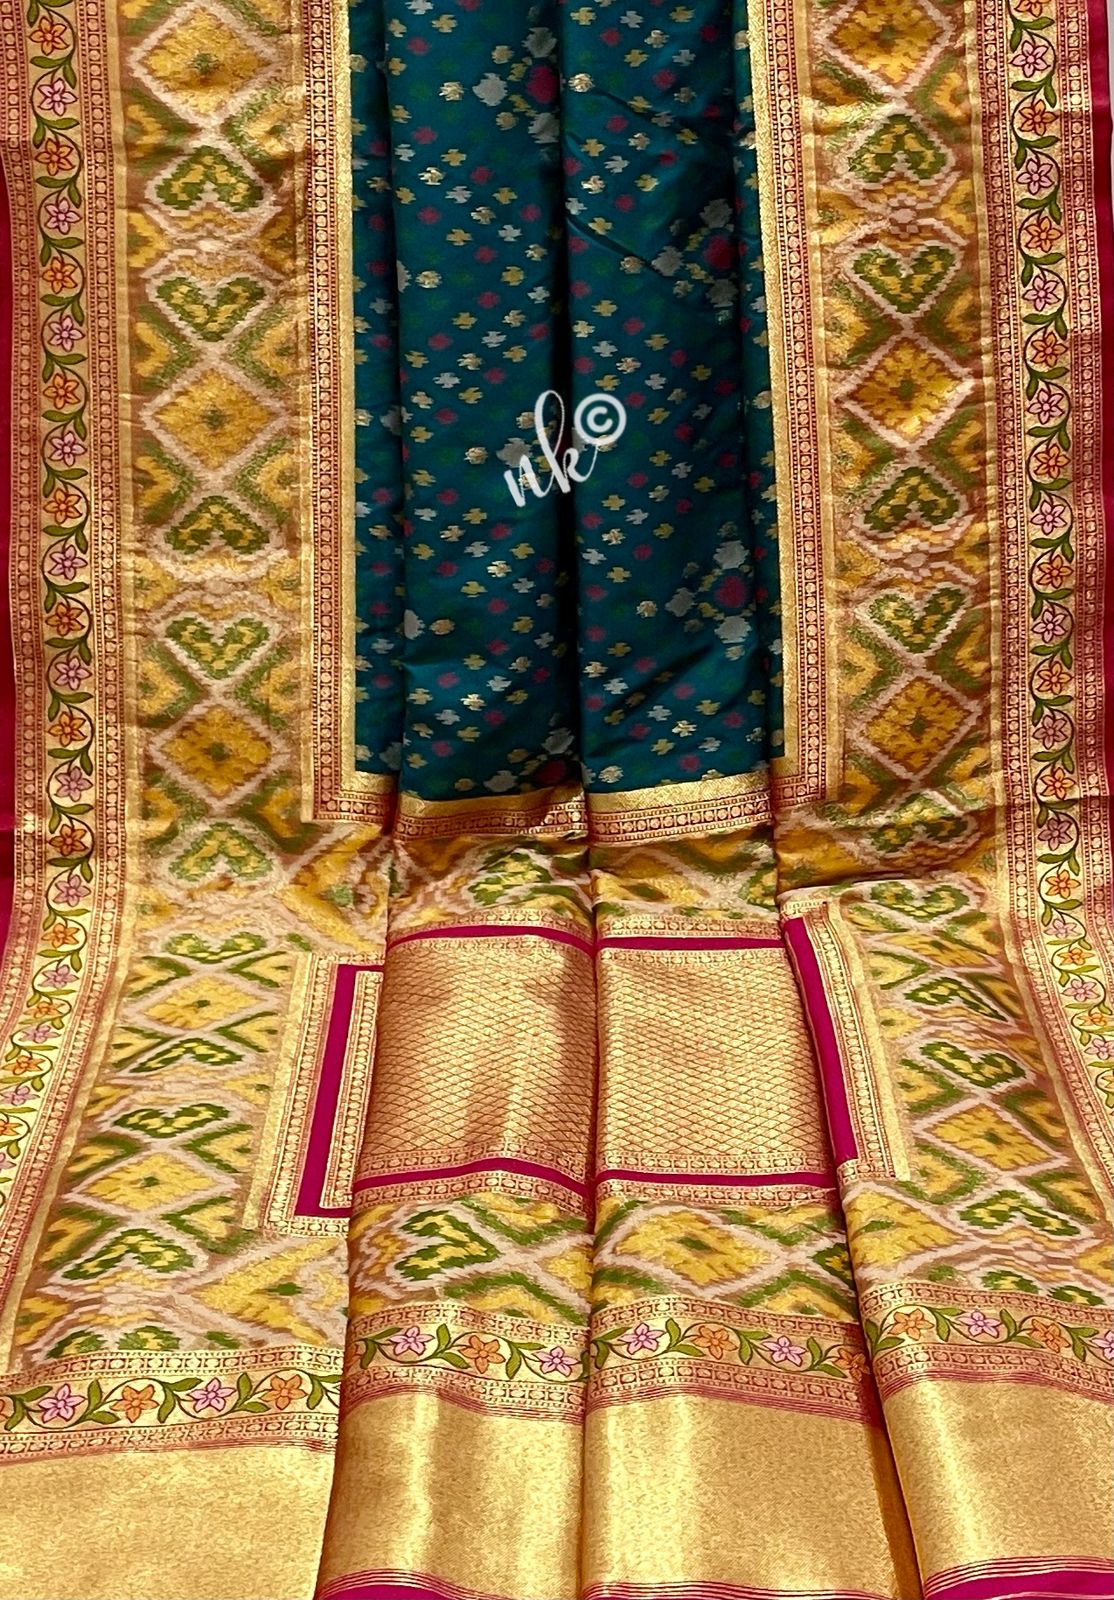 Rajkot styled Patola saree